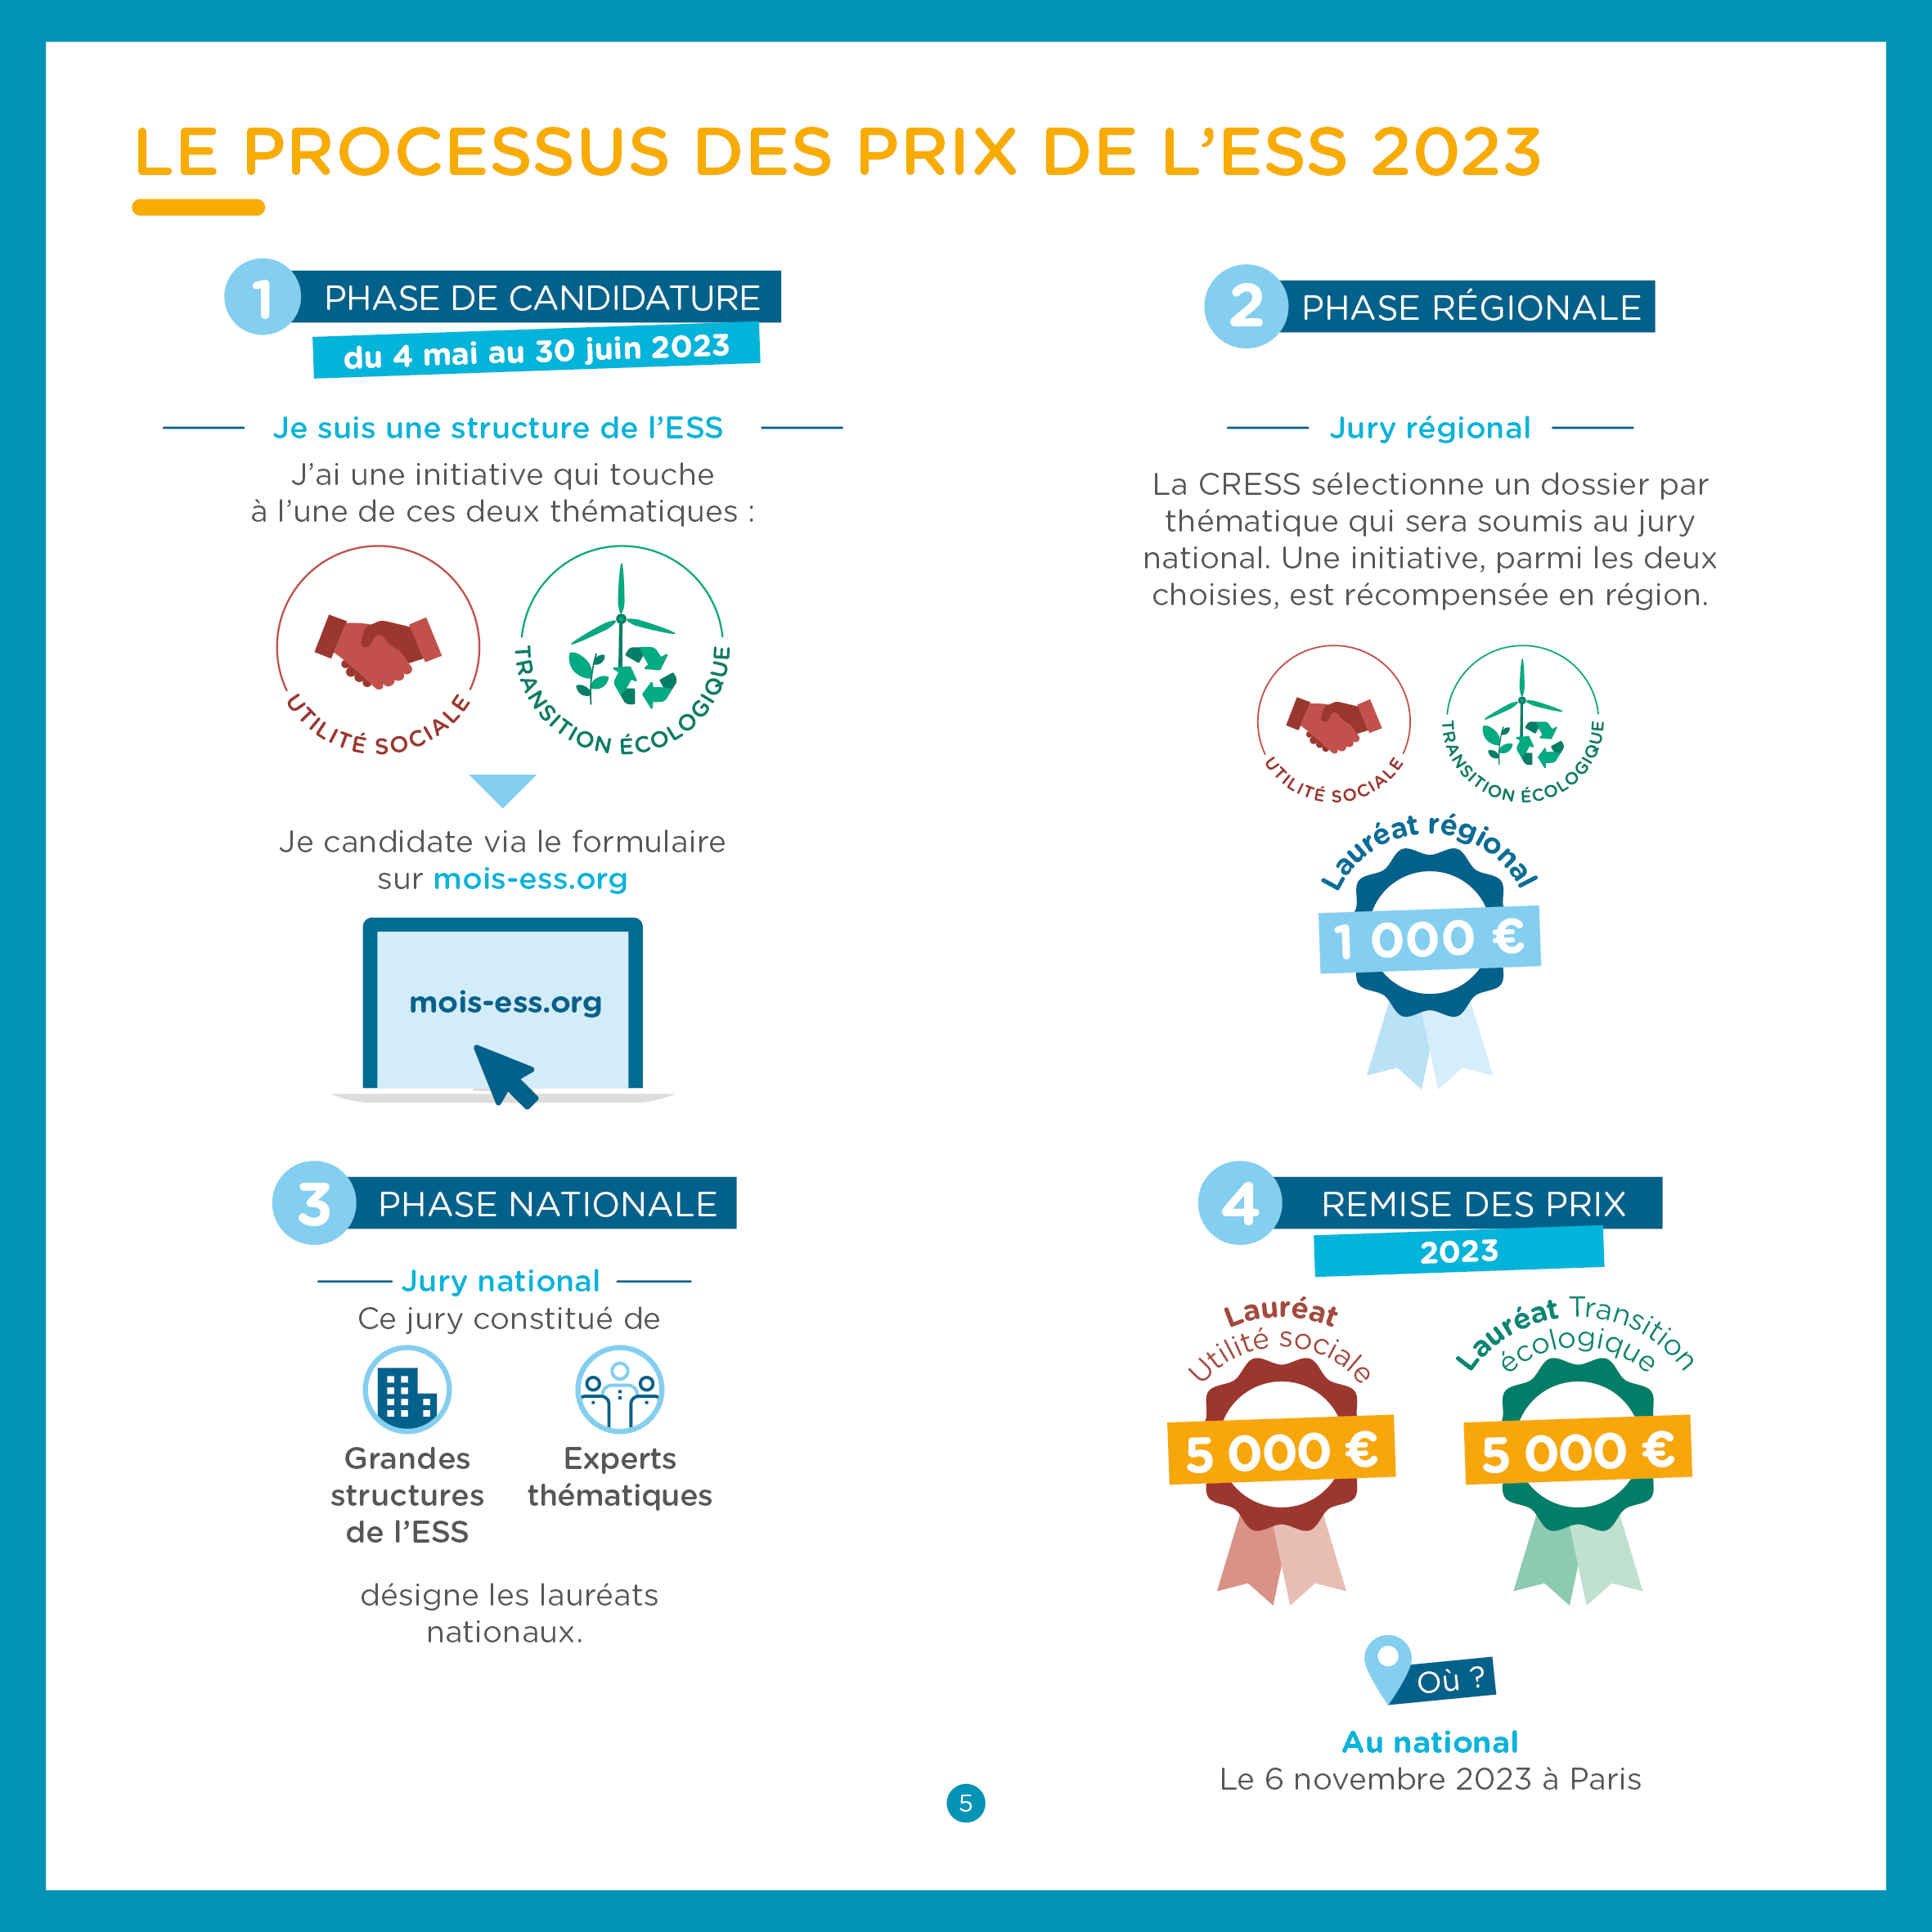 Le Processus des Prix 2023, en infographie !